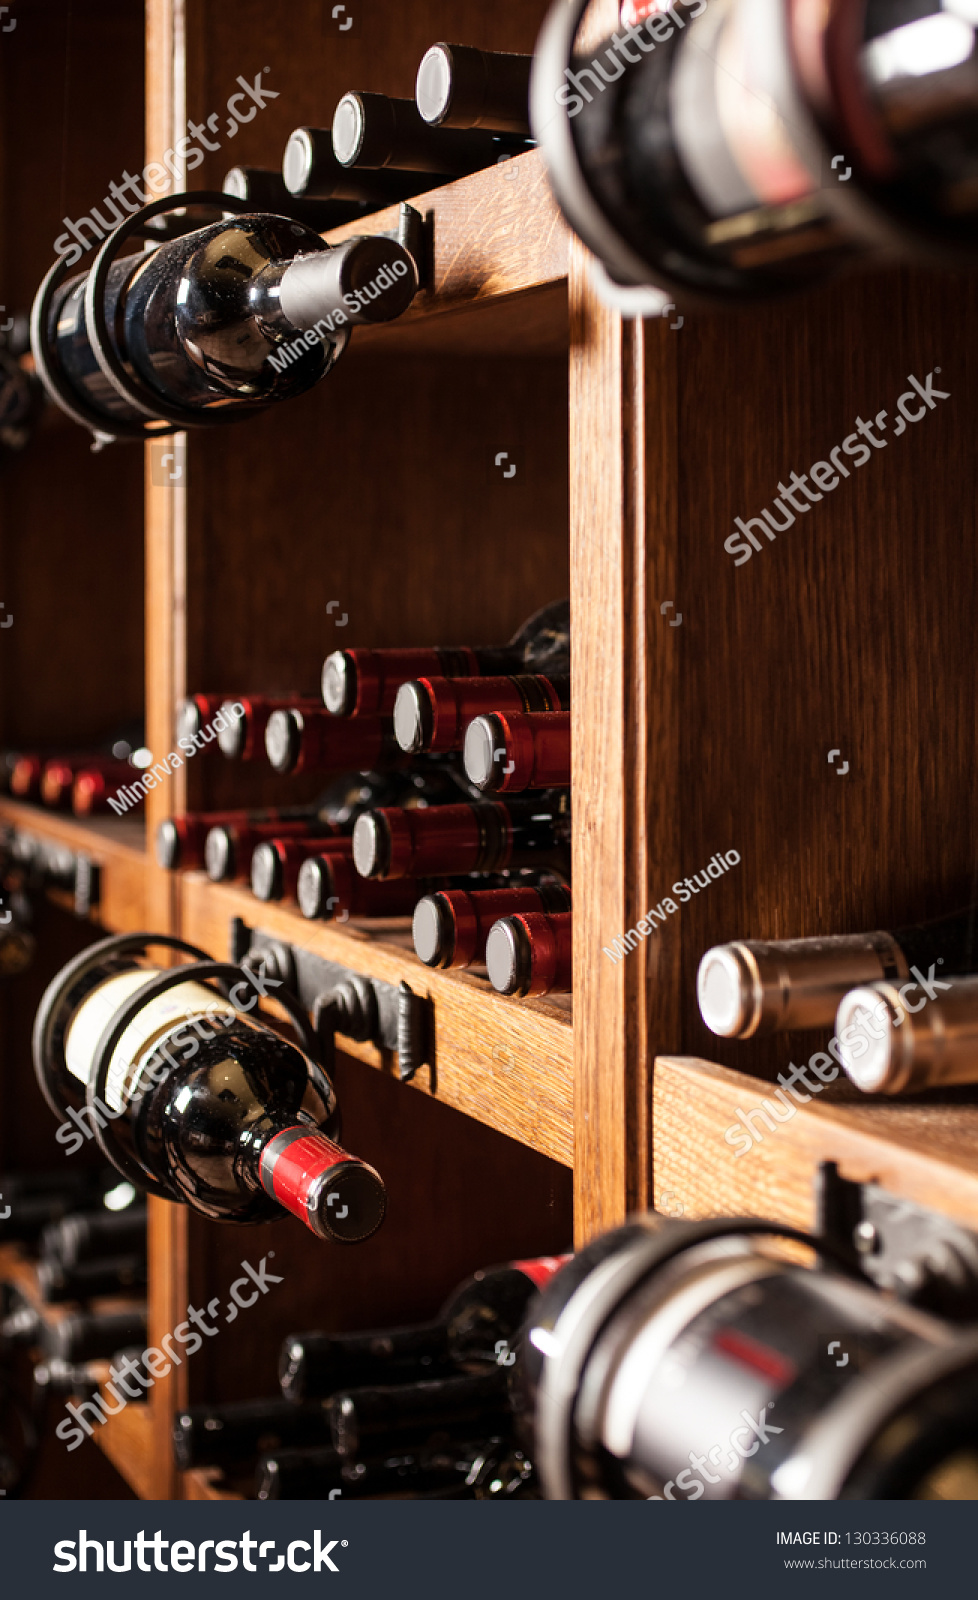 Wine cellar full of wine bottles #130336088